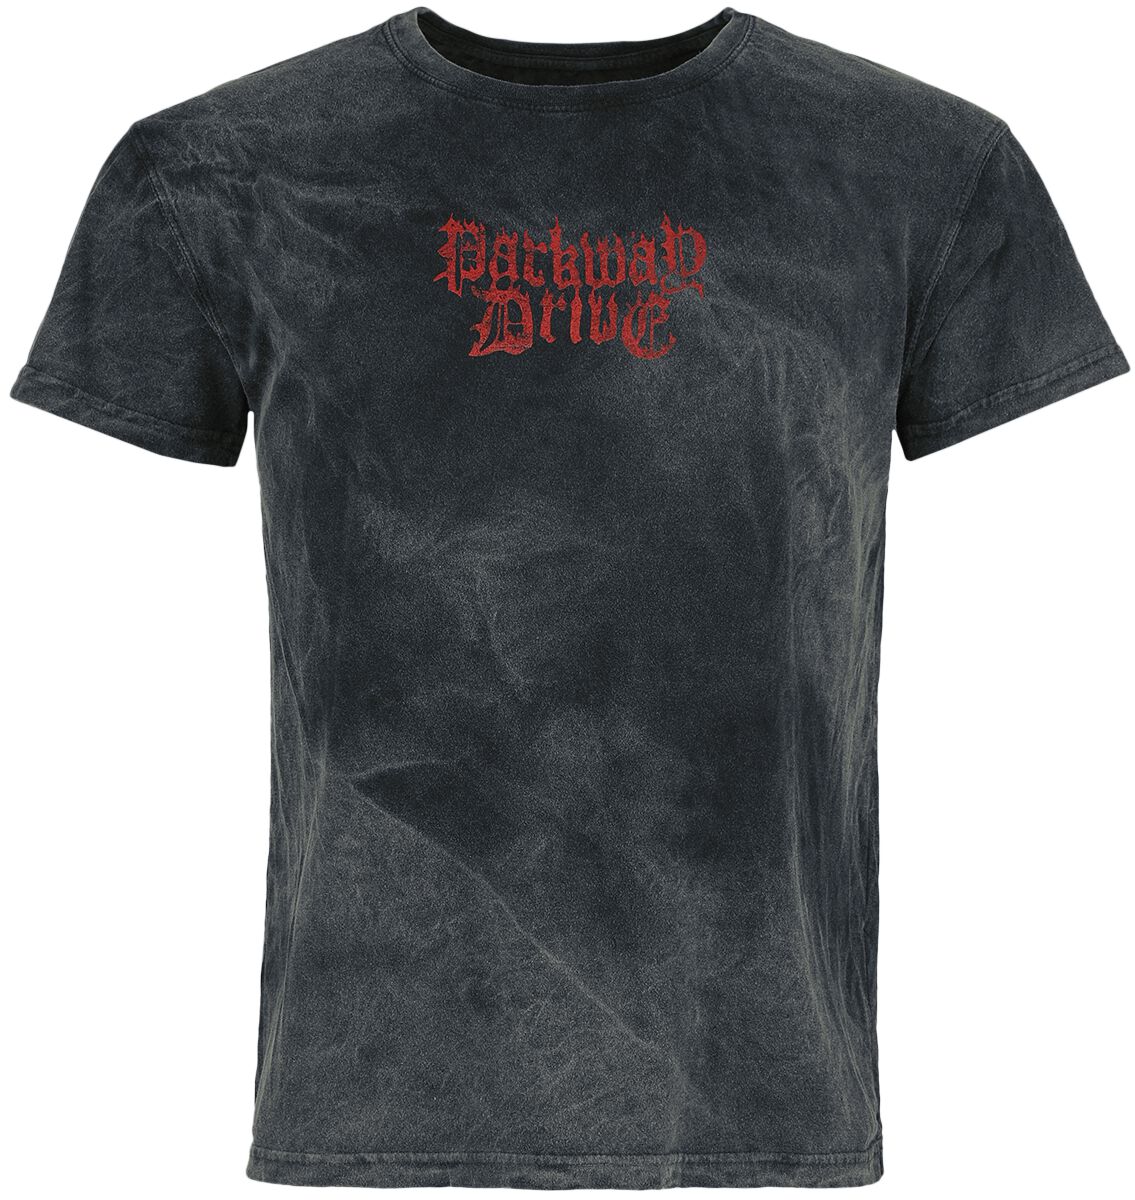 Parkway Drive T-Shirt - King Of Nevermore - S bis L - für Männer - Größe M - dunkelgrau  - Lizenziertes Merchandise!